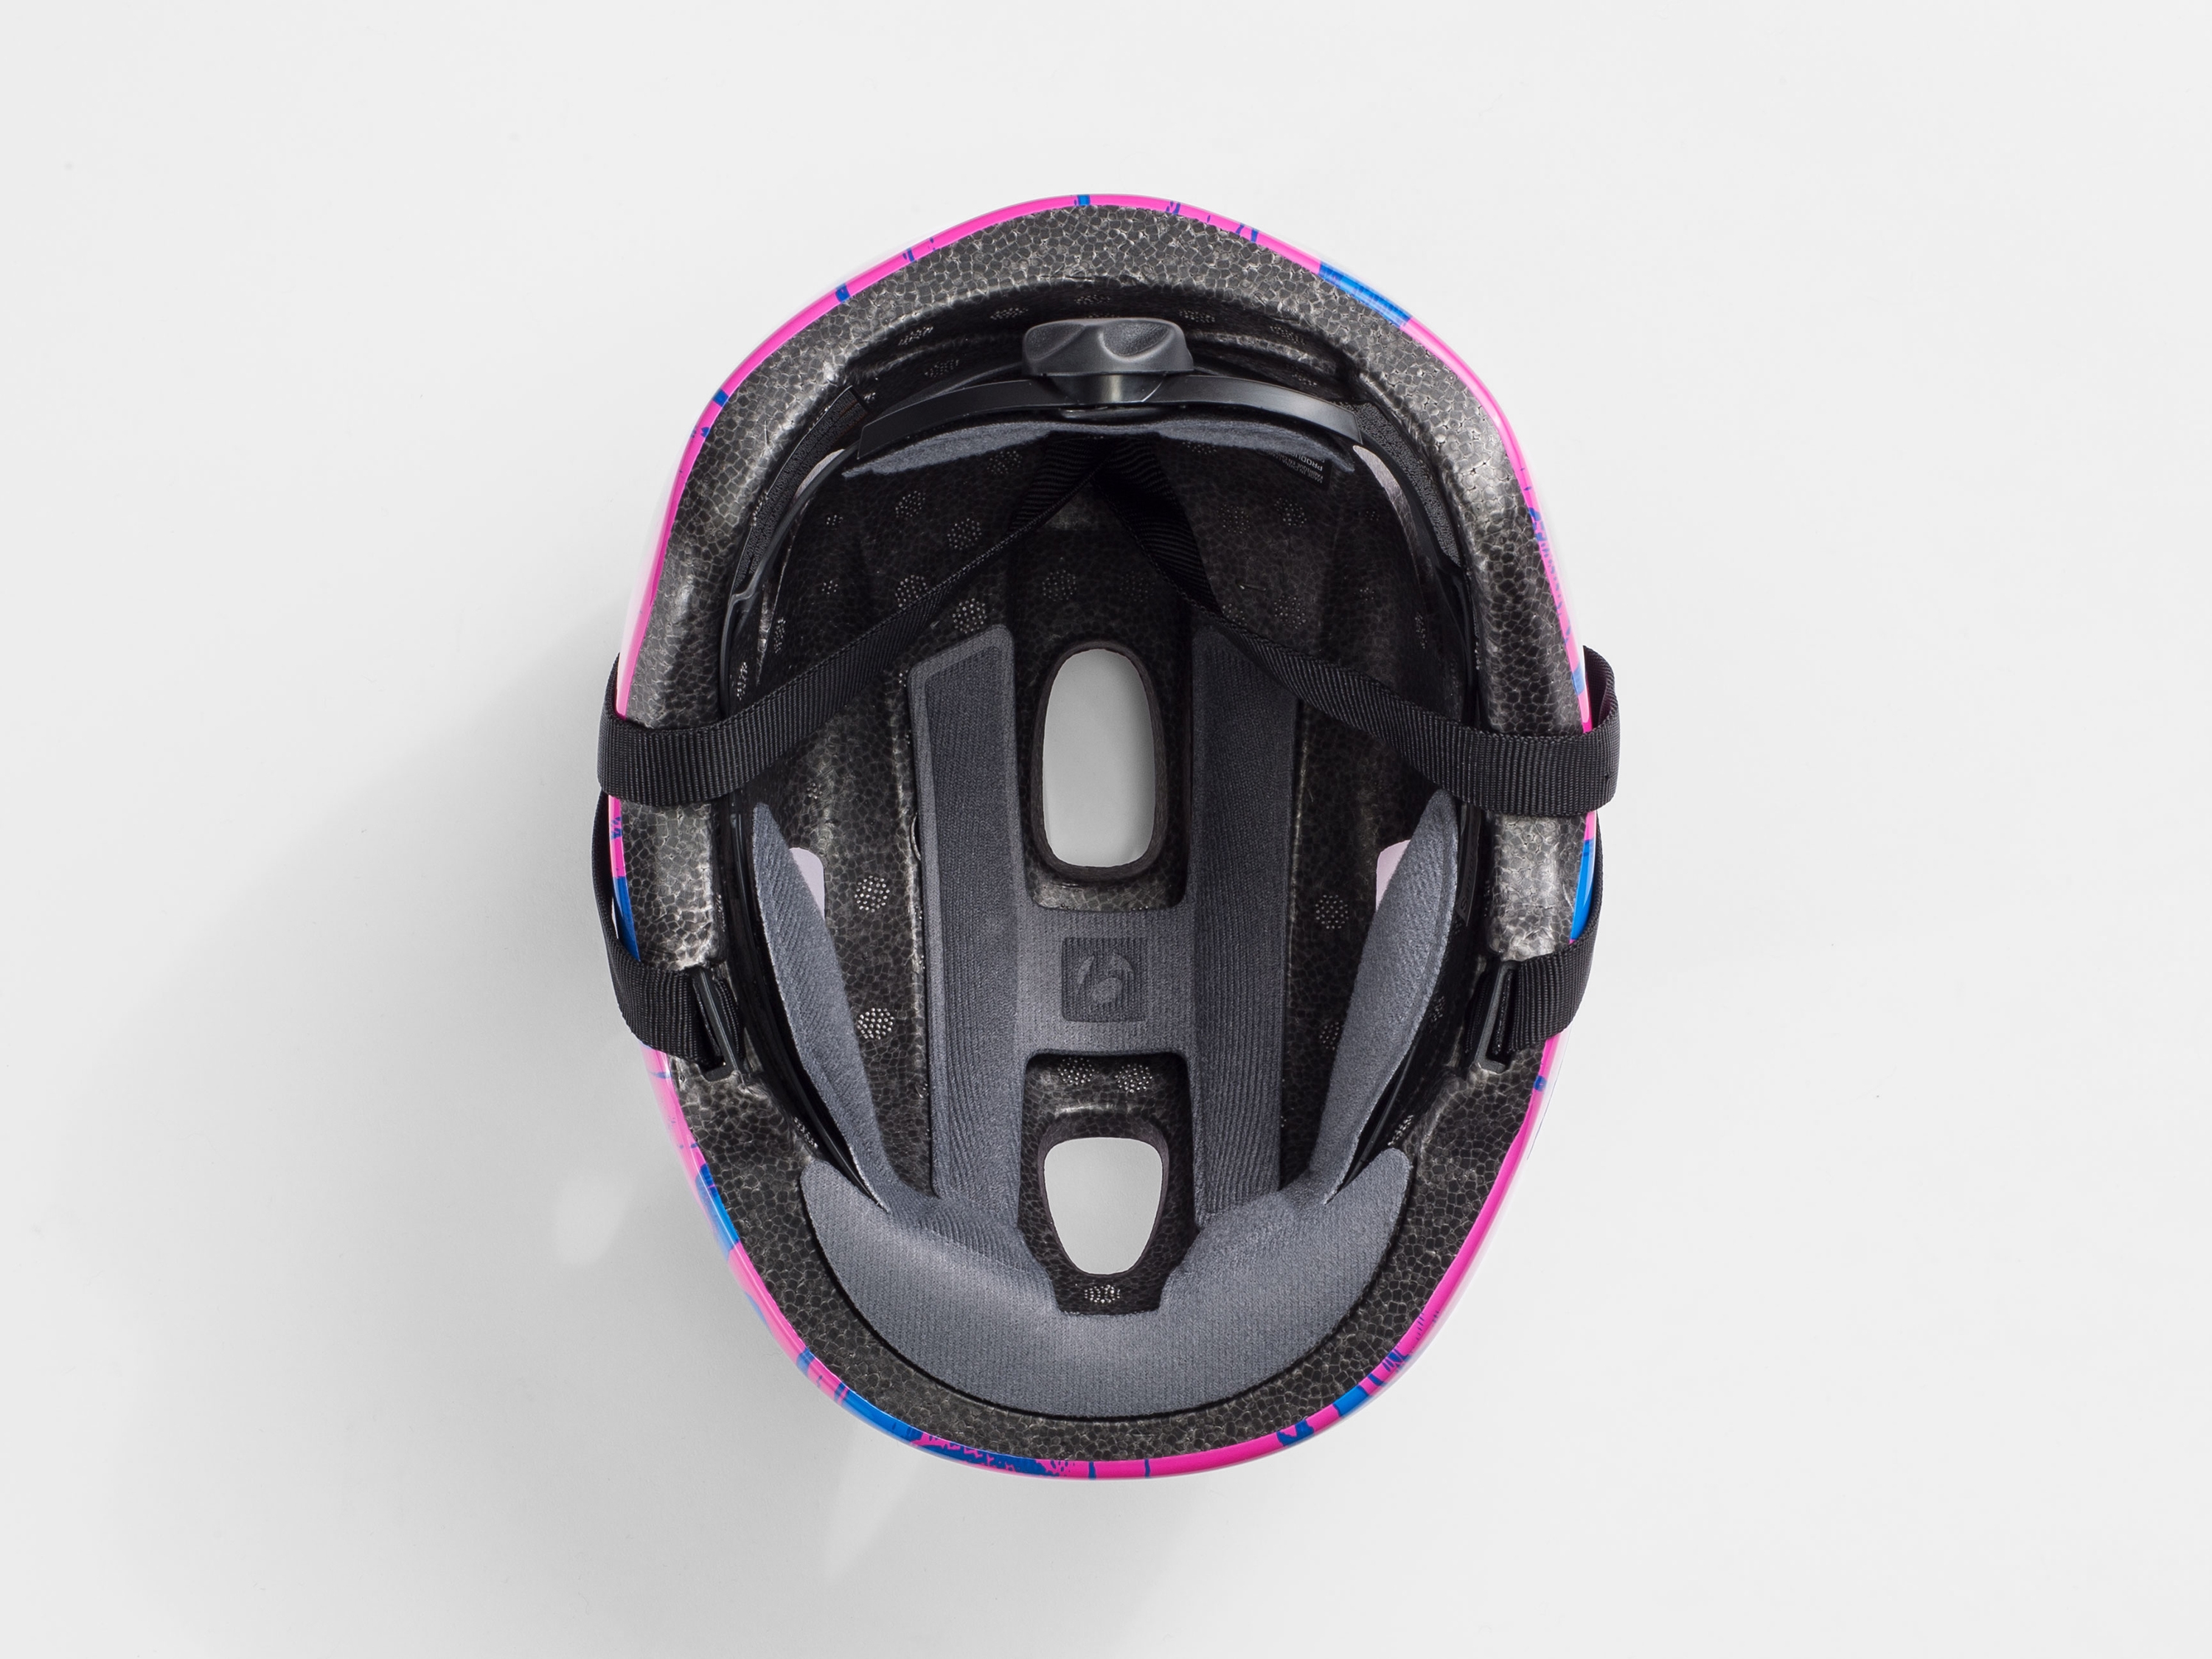 bontrager little dipper children's bike helmet